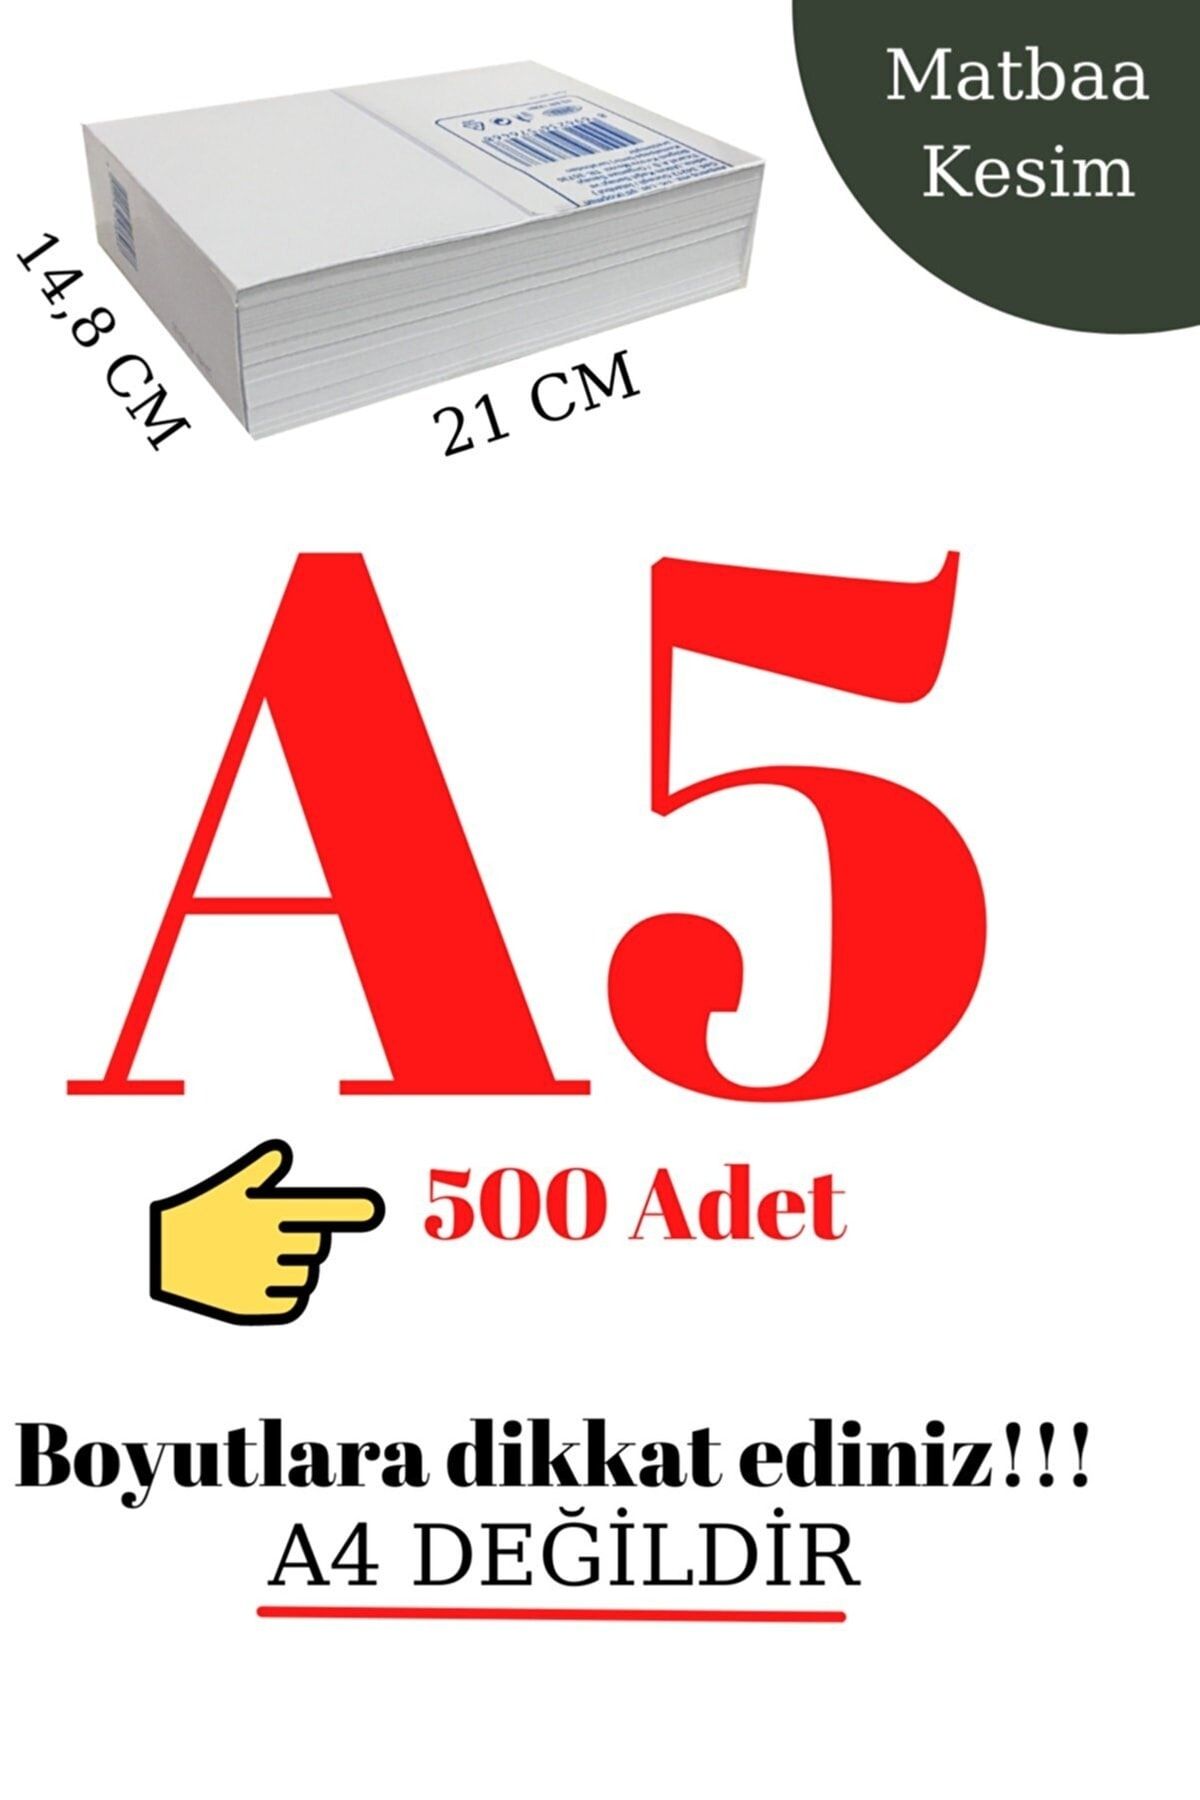 Mçb Group 500 Adet A5 Fotokopi Kağıdı (A4'ÜN YARISIDIR) A5 Kağıt Baskı Kağıdı Yazıcı Kağıdı 80 Gr/m2